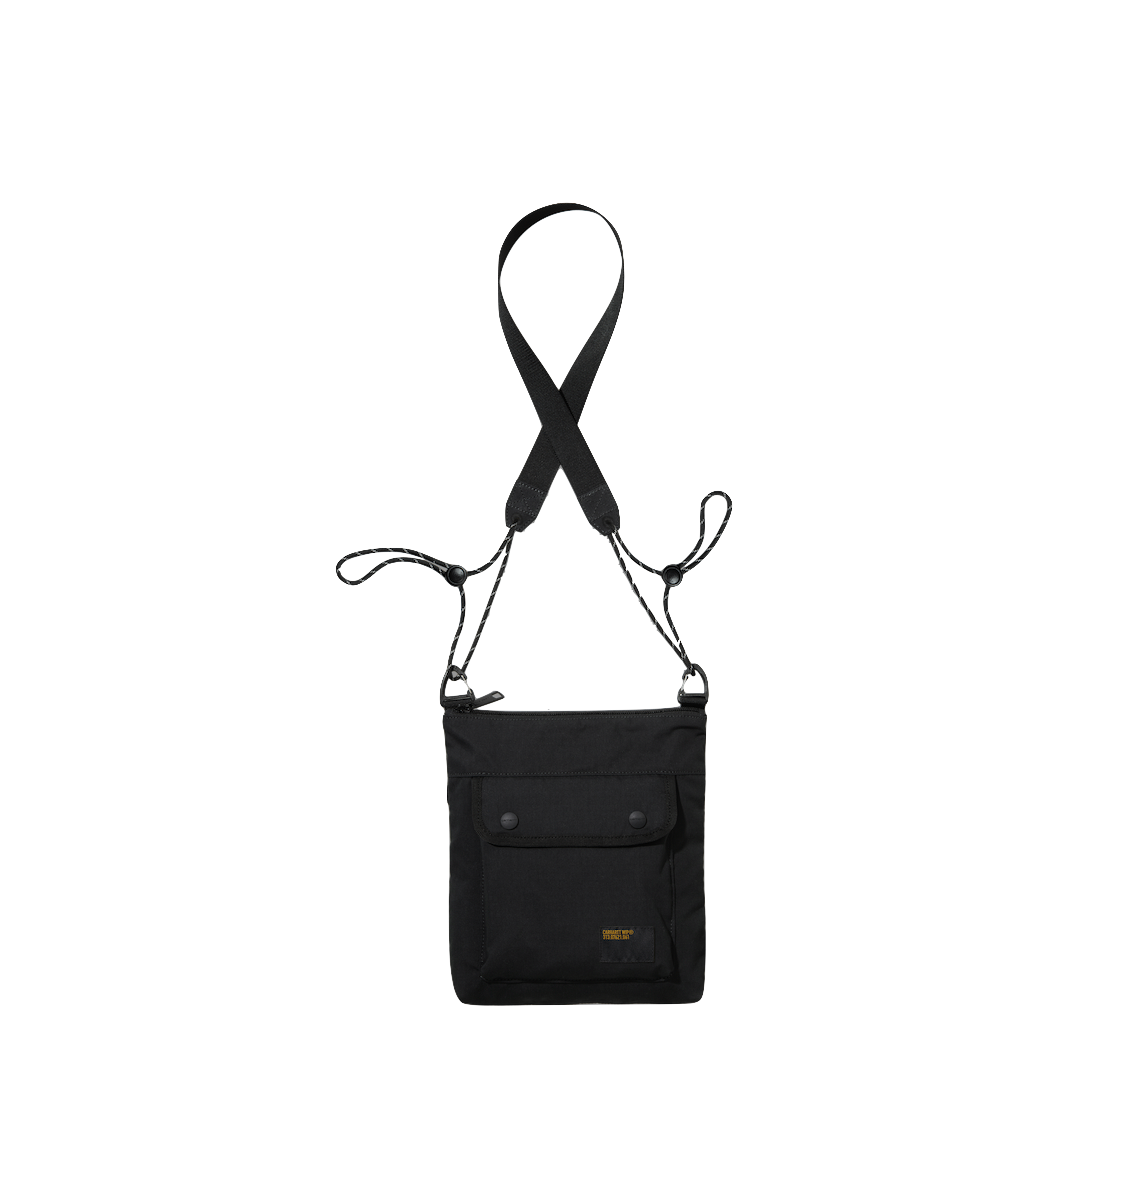 Carhartt WIP Haste strap bag black